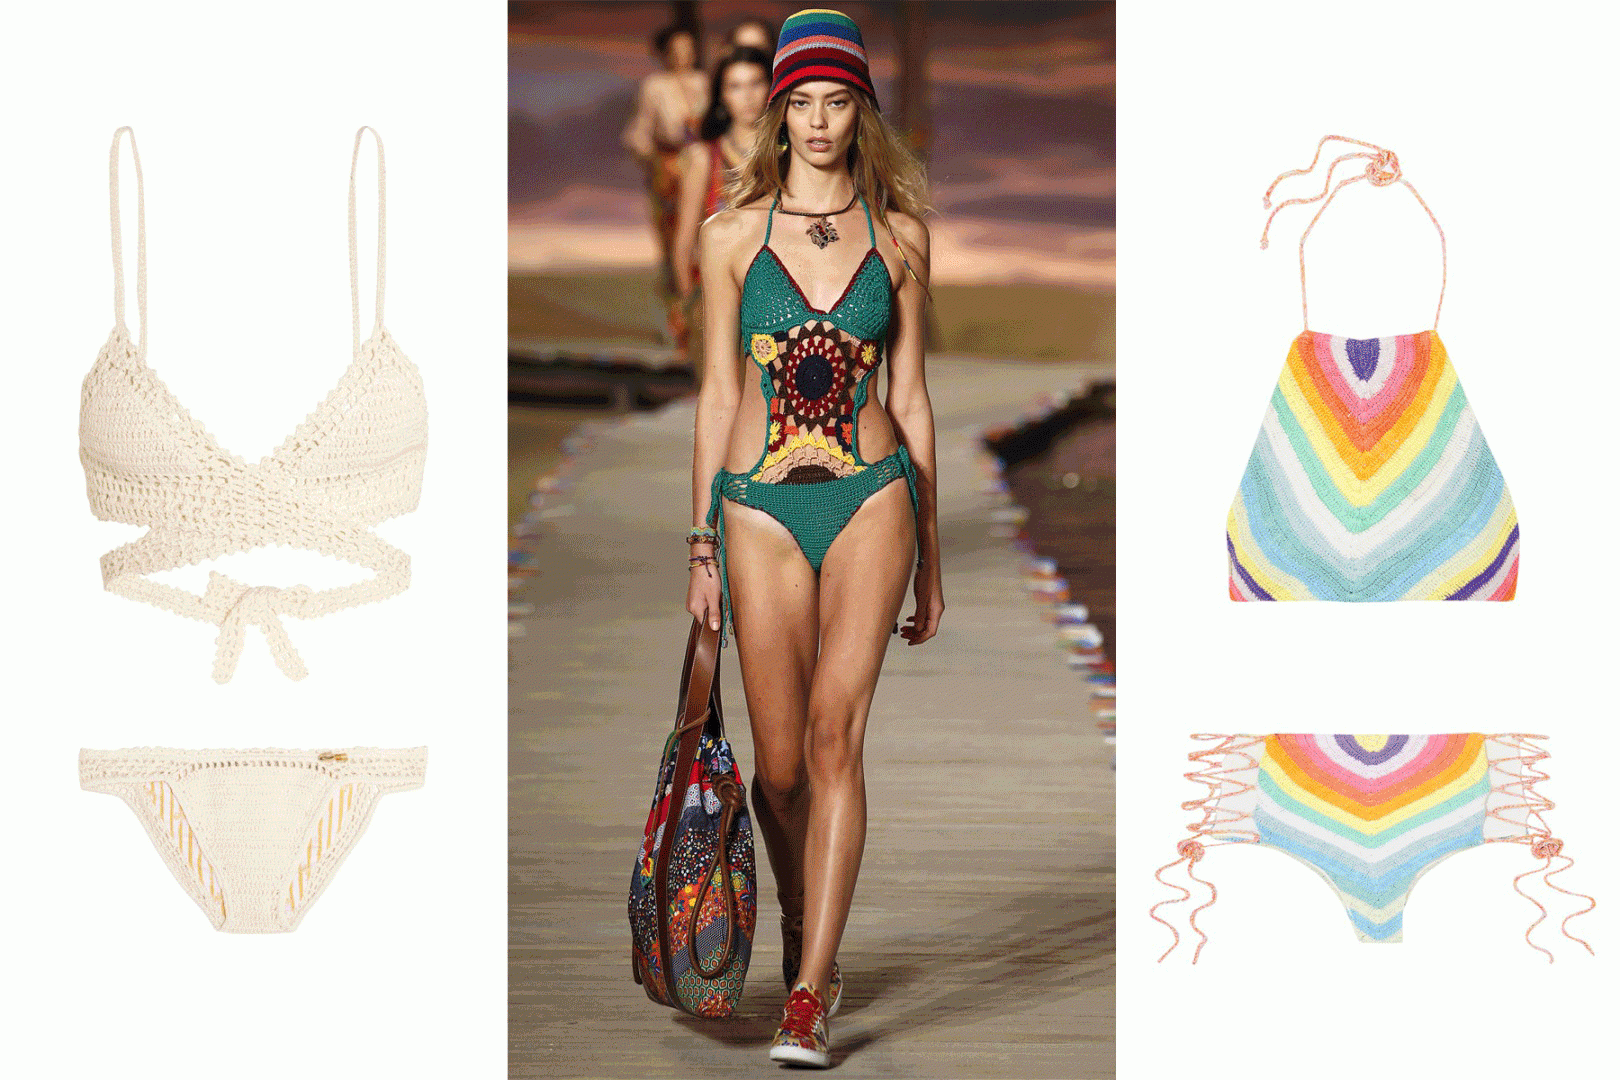 Plaj Trendleri: 2016 Yazının Öne Çıkan 5 Mayo ve Bikini Modeli